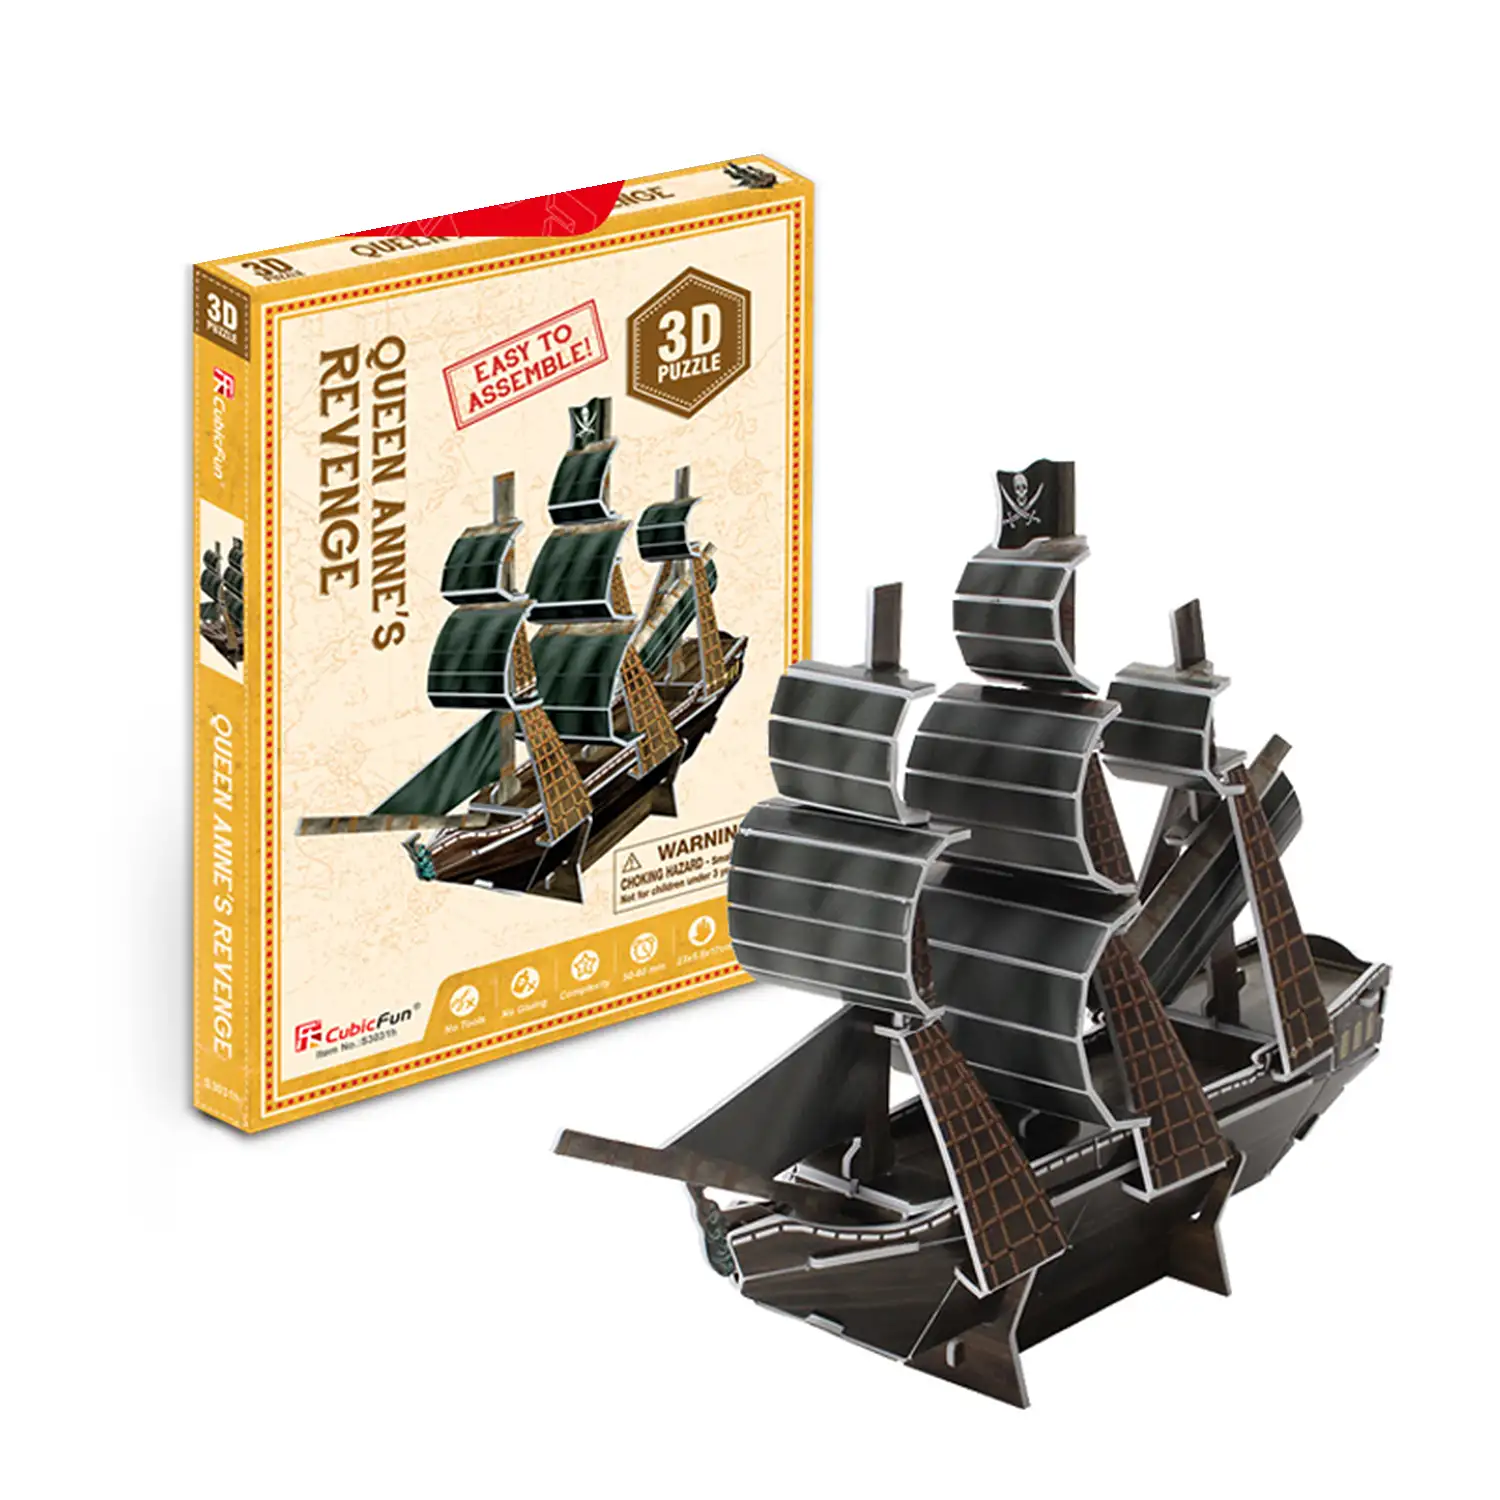 Puzzle 3D barco pirata.